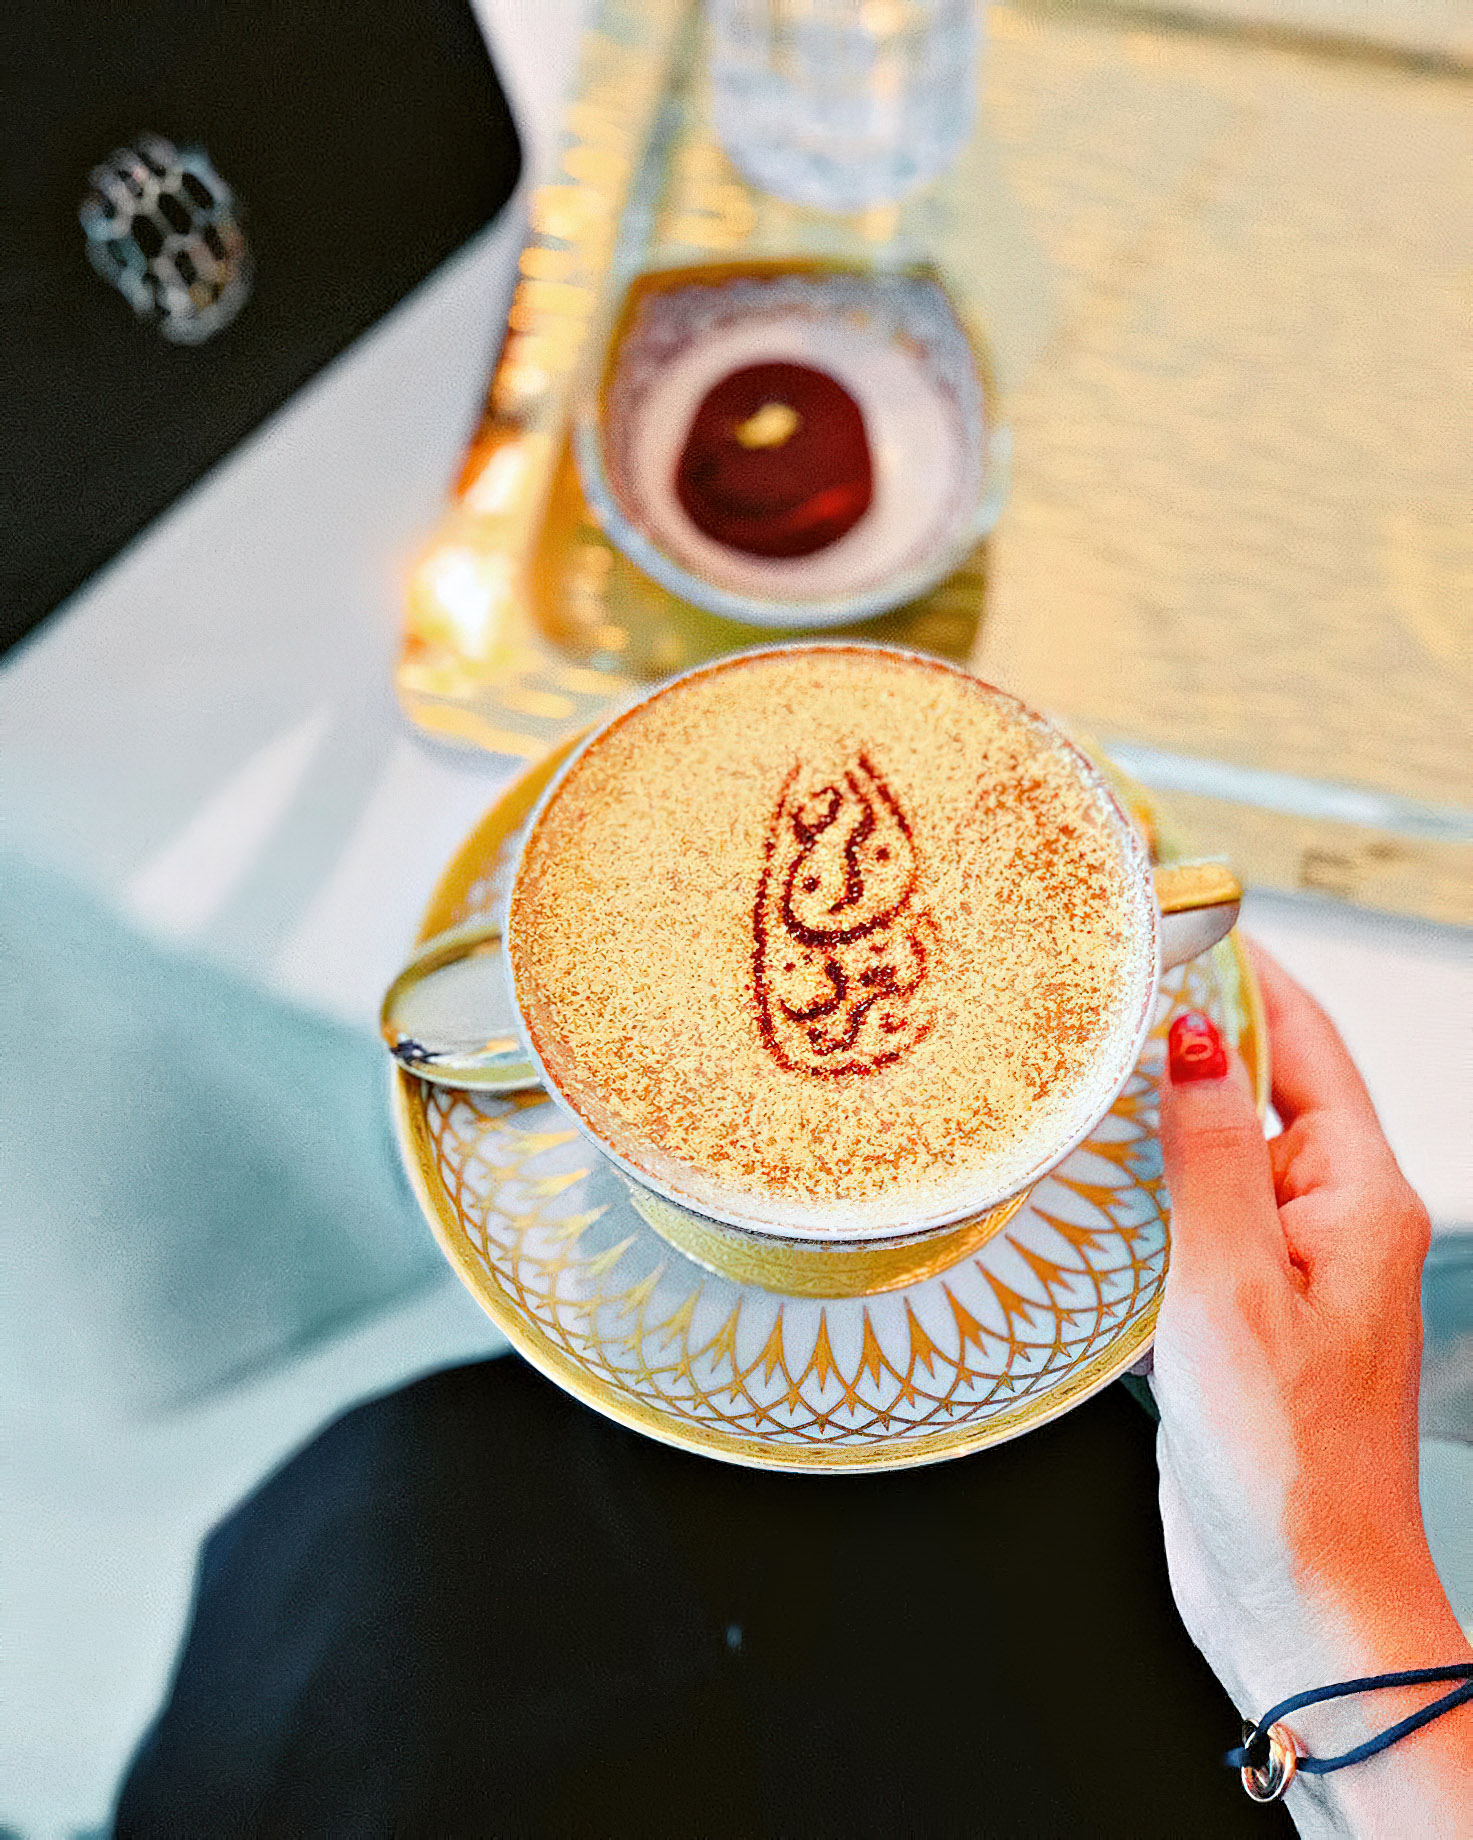 Burj Al Arab Jumeirah Hotel – Dubai, UAE – Sahn Eddar Lounge 24 Carat Gold Cappuccino